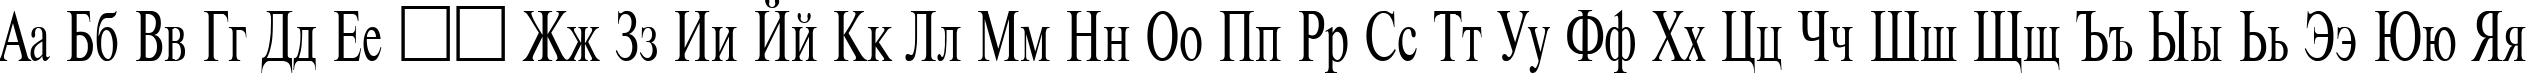 Пример написания русского алфавита шрифтом TimesET 75